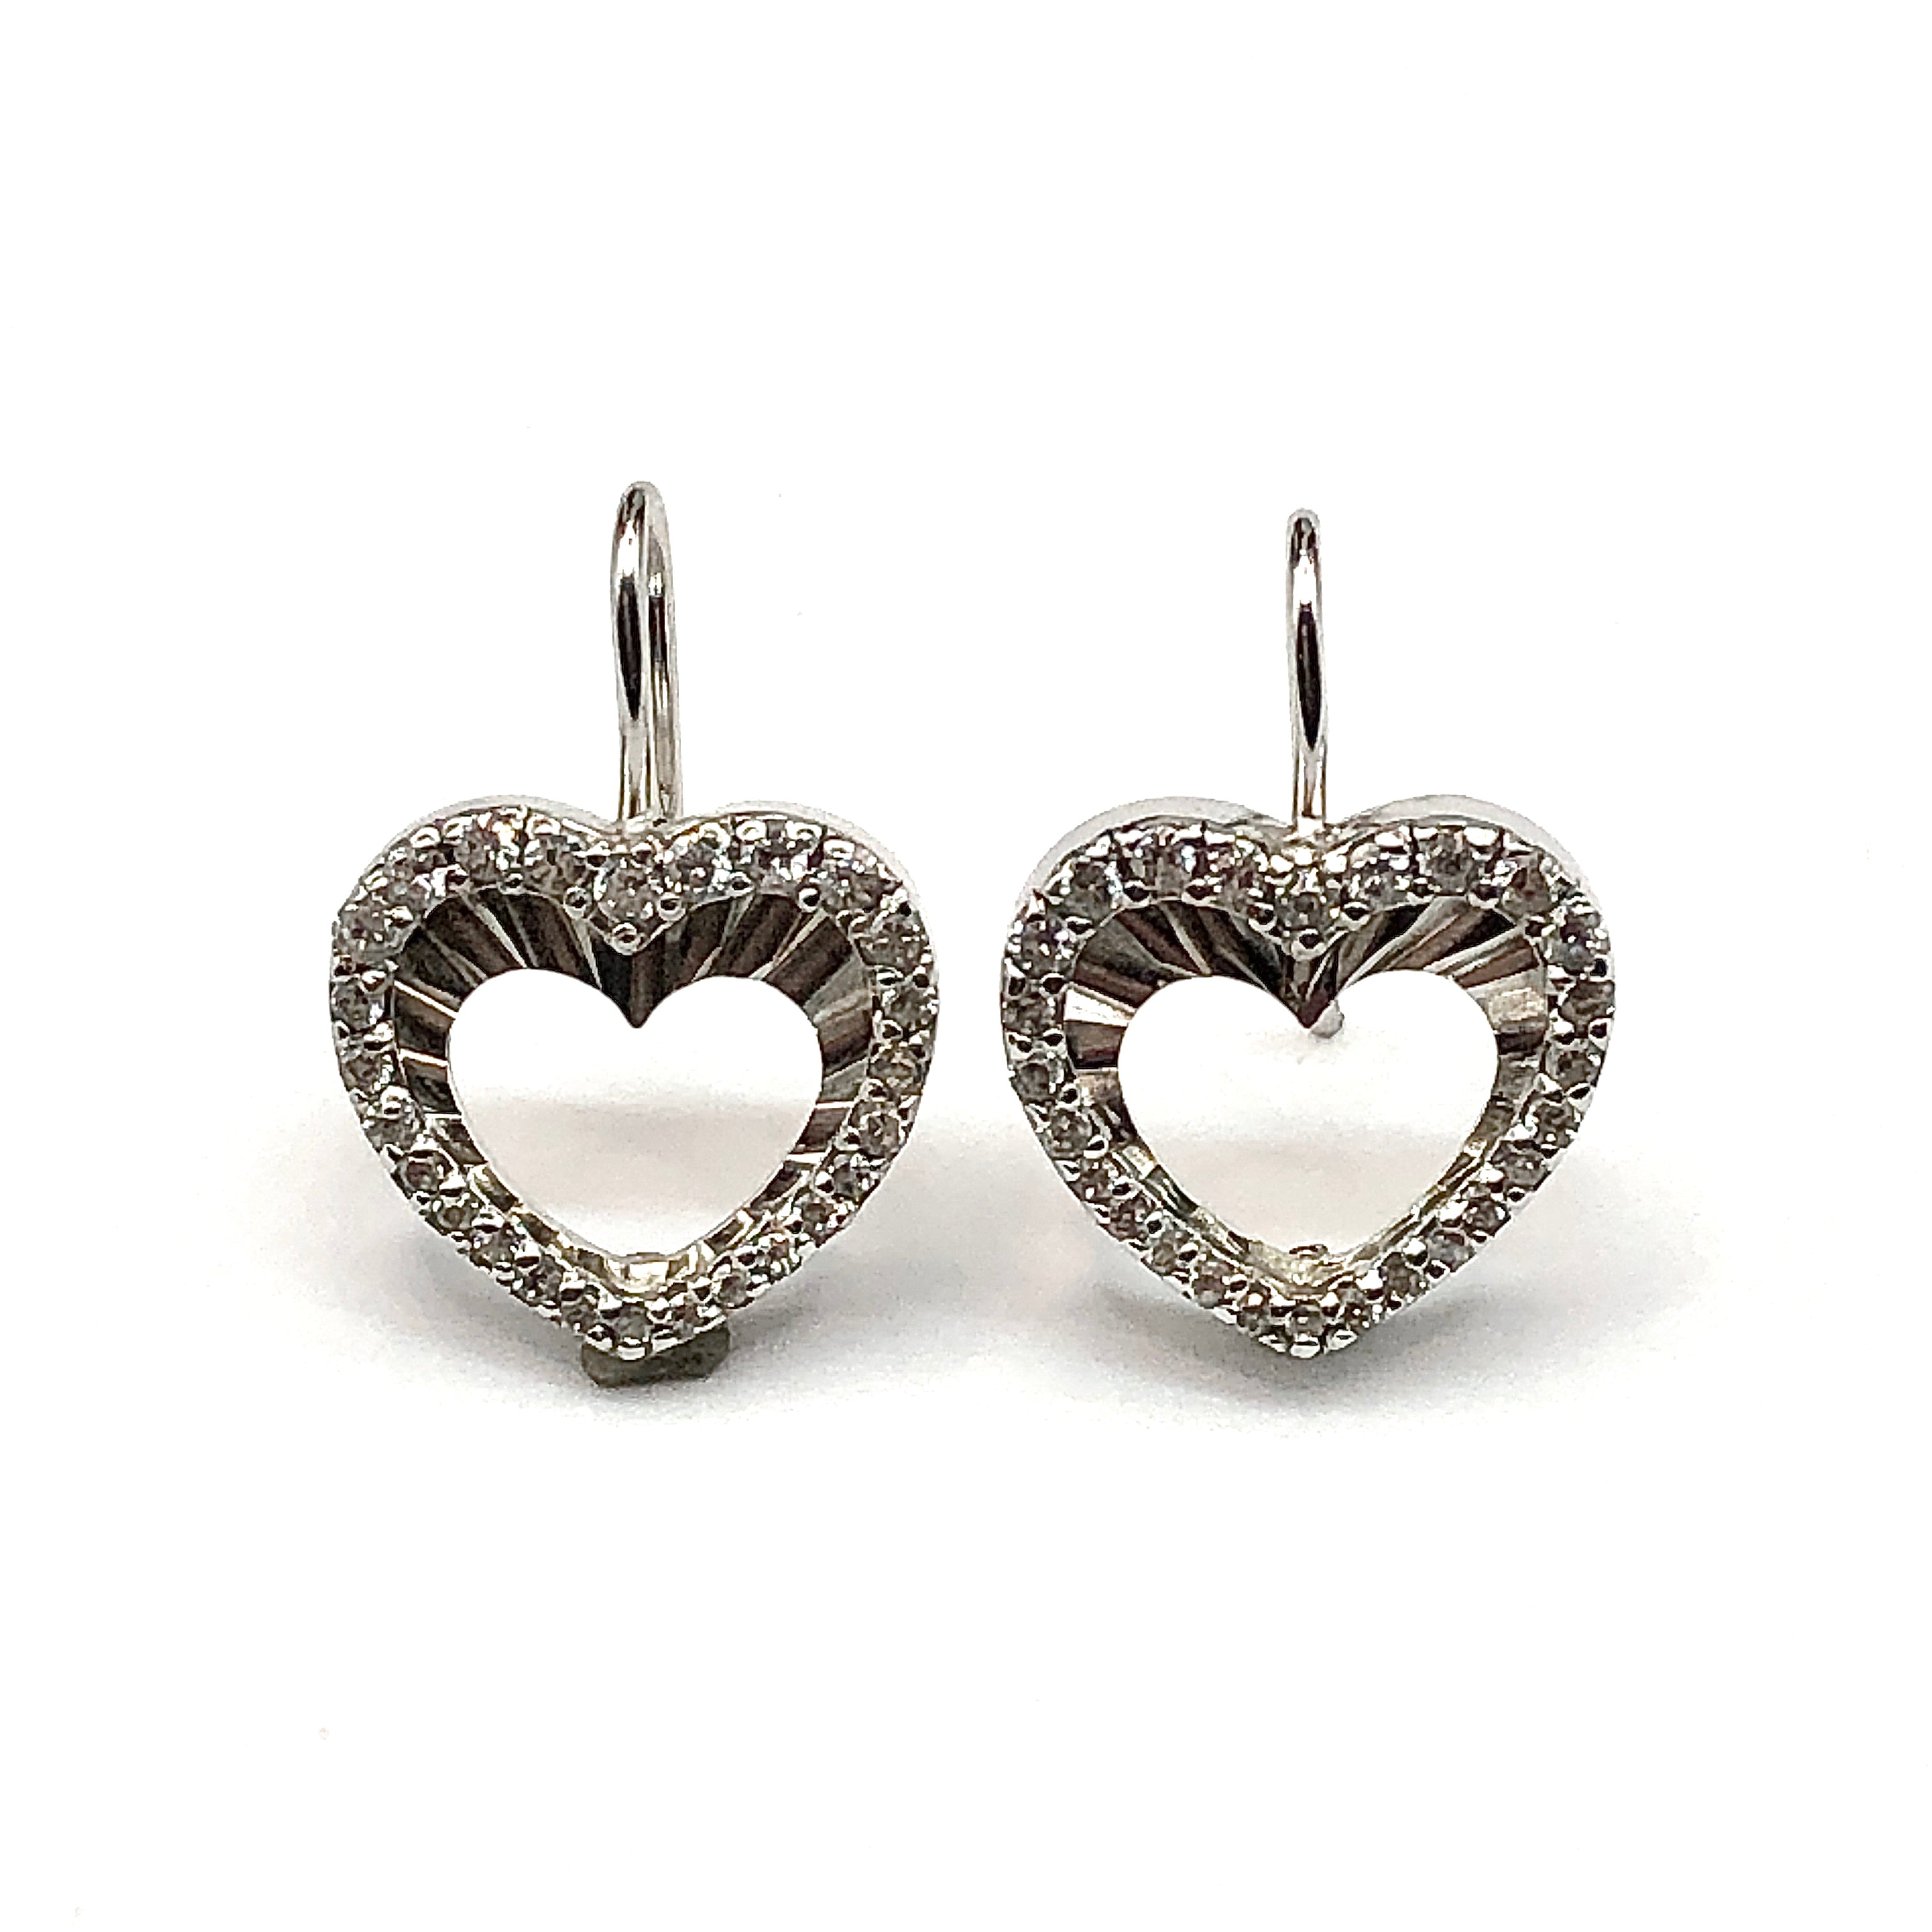 Earrings - Womens Sterling Silver Cubic Zirconia Stone Earrings